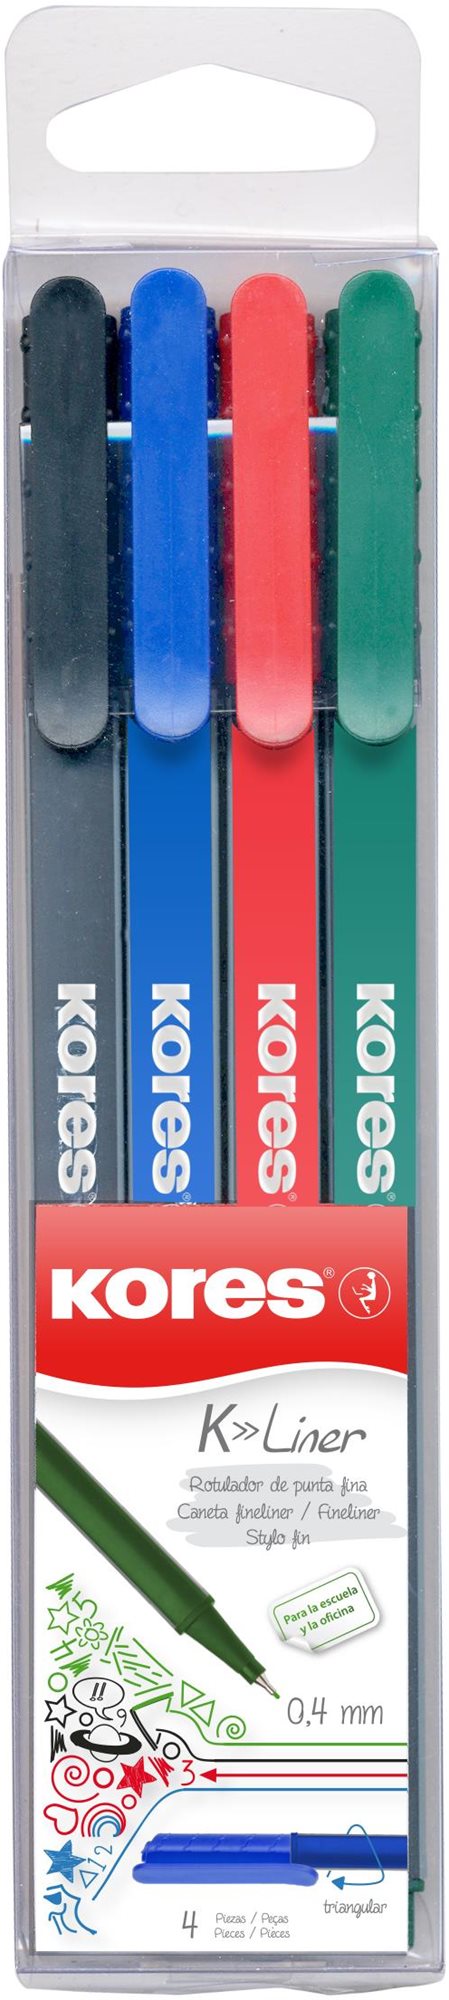 KORES K-Liner 0,4 mm - 4 színből álló készlet